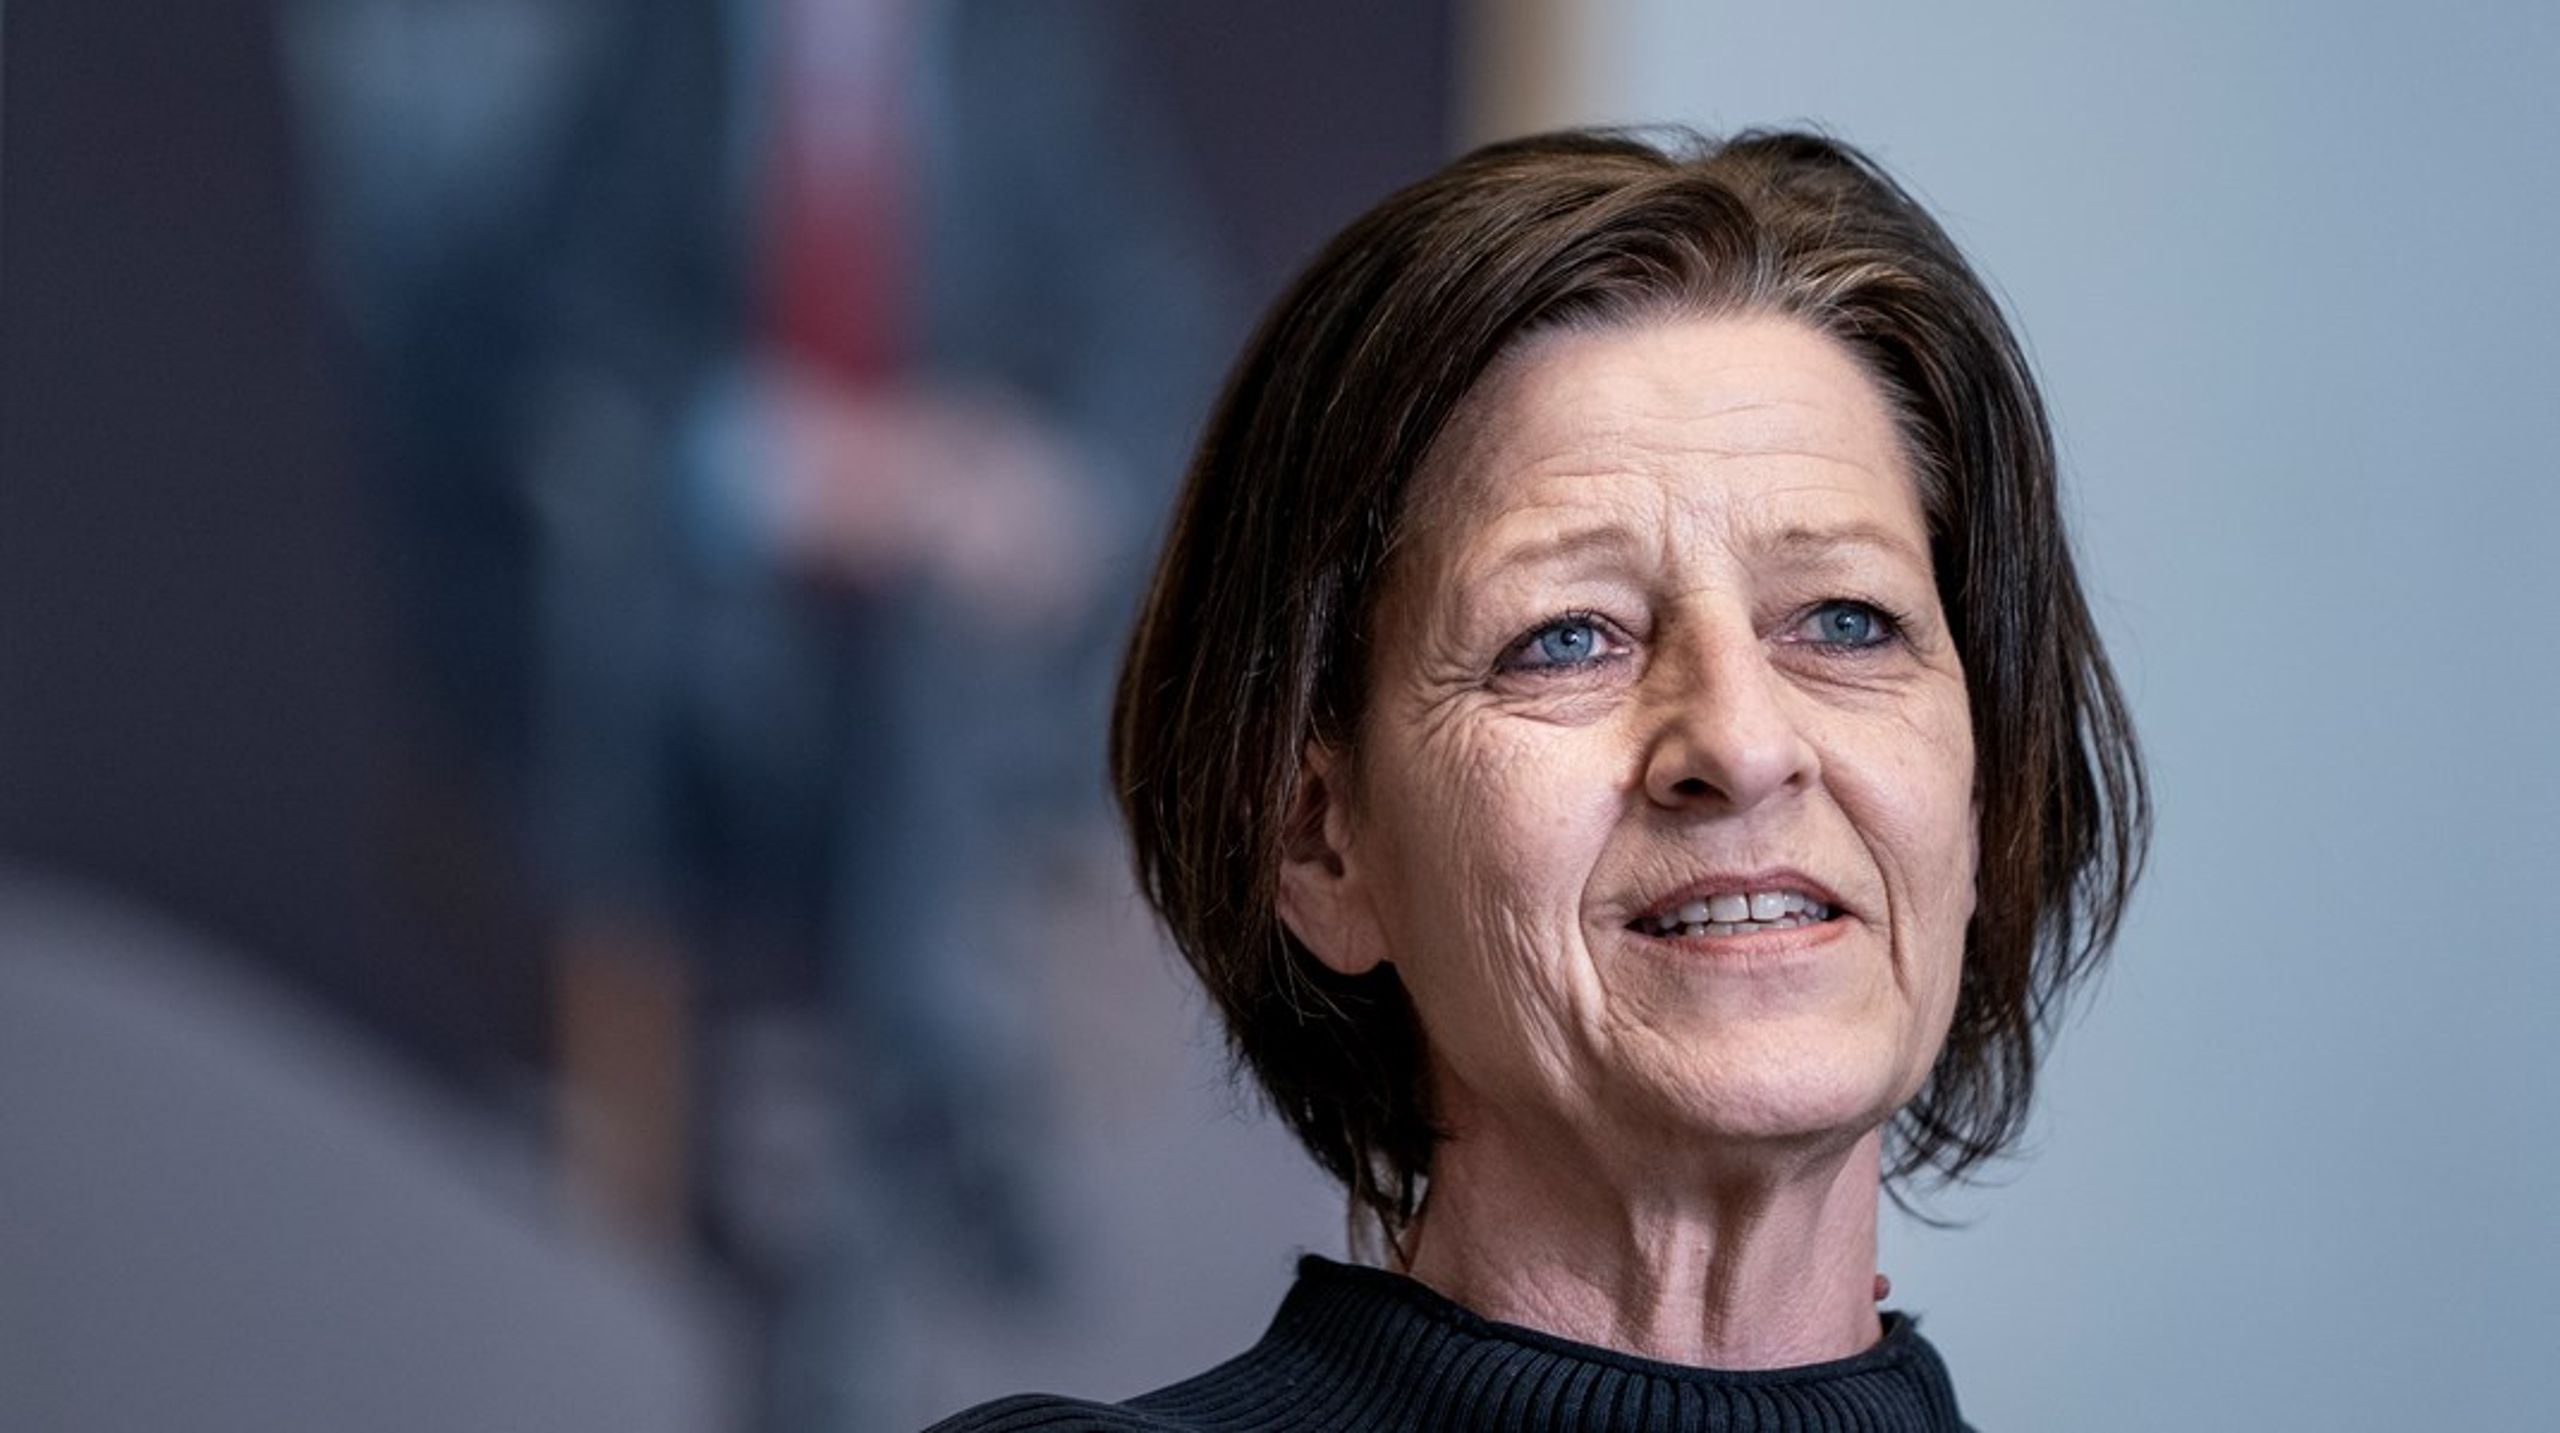 Rettigheder til en værdig behandling i ældresektoren er fundamental for den danske velfærdsmodel og sikrer tillid, tryghed og sammenhængskraft på tværs af samfundslag, skriver SF's ældreordfører.